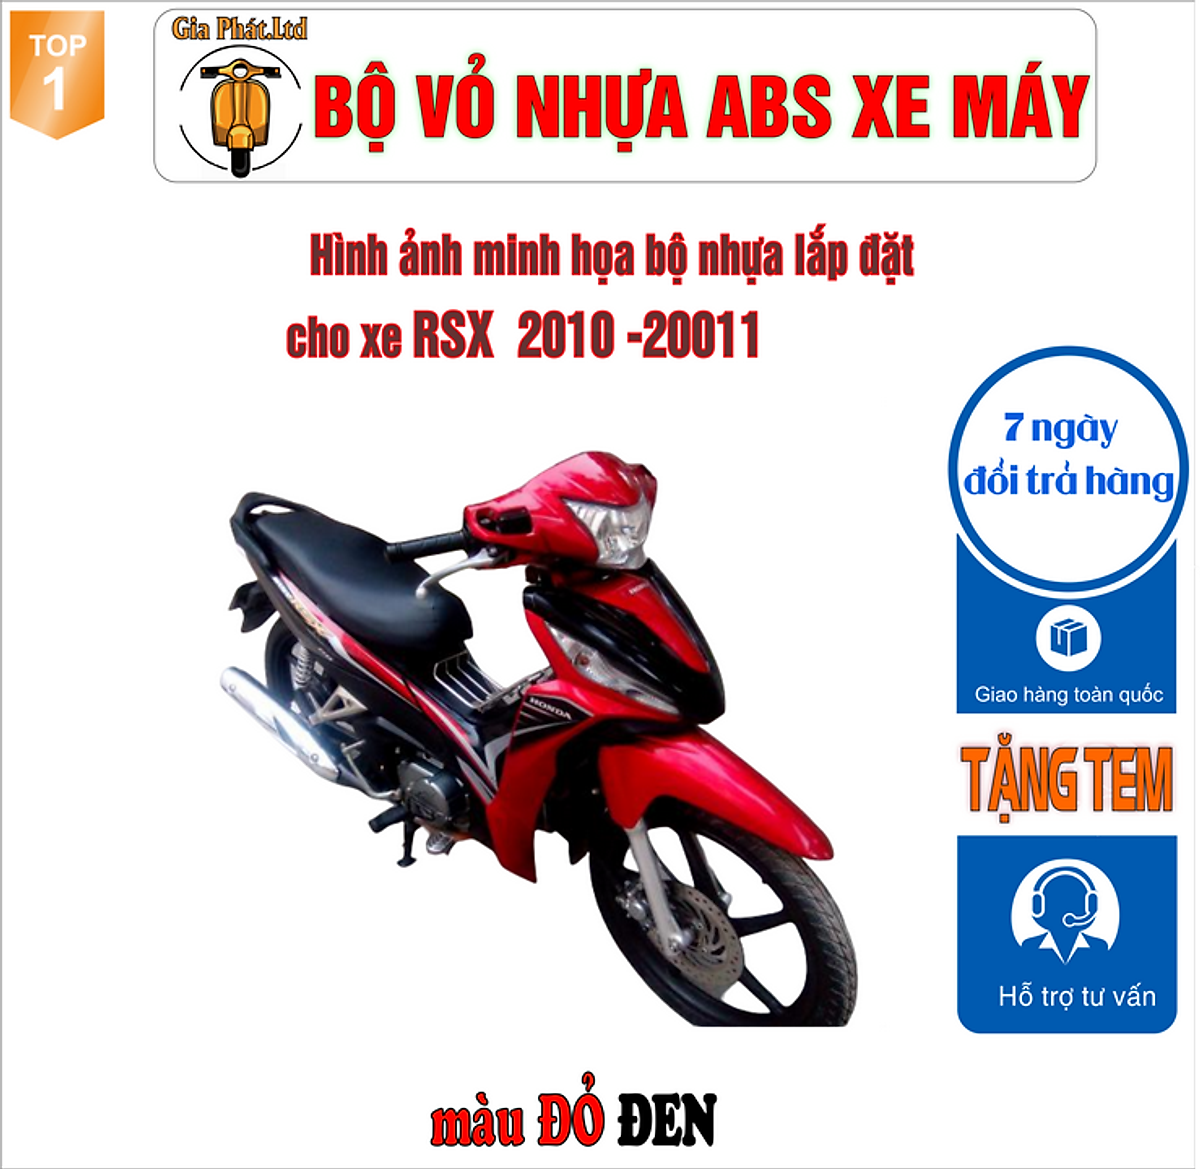 Dàn nhựa xe máy Sài Gòn  Dàn áo Wave RSX 110 Giá bán 1tr2  Bộ cả tem   Facebook